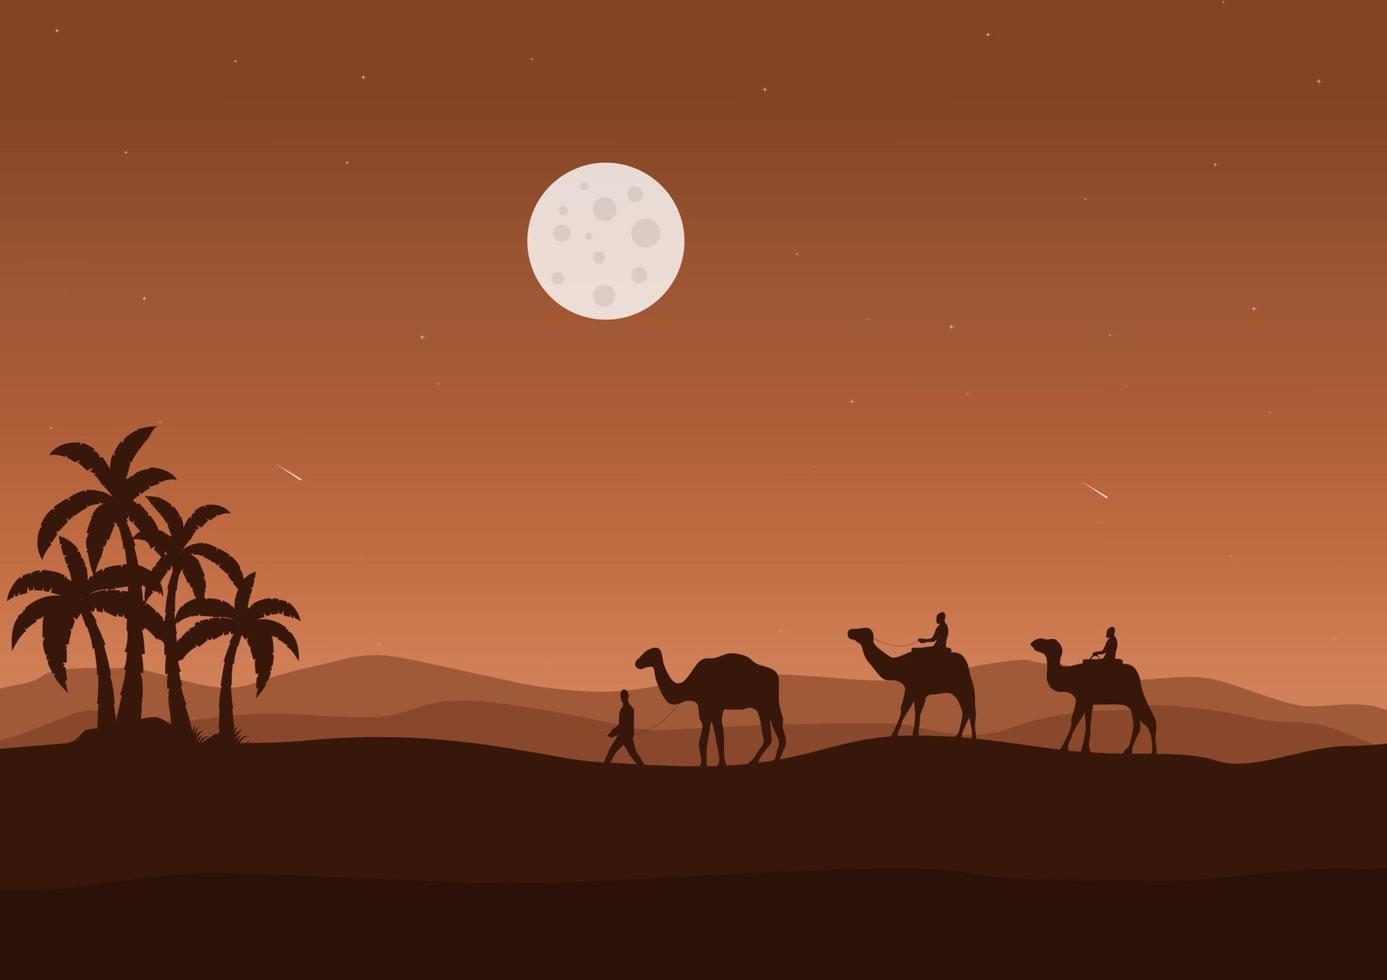 chameaux dans le désert avec une plein lune à nuit, vecteur illustration.